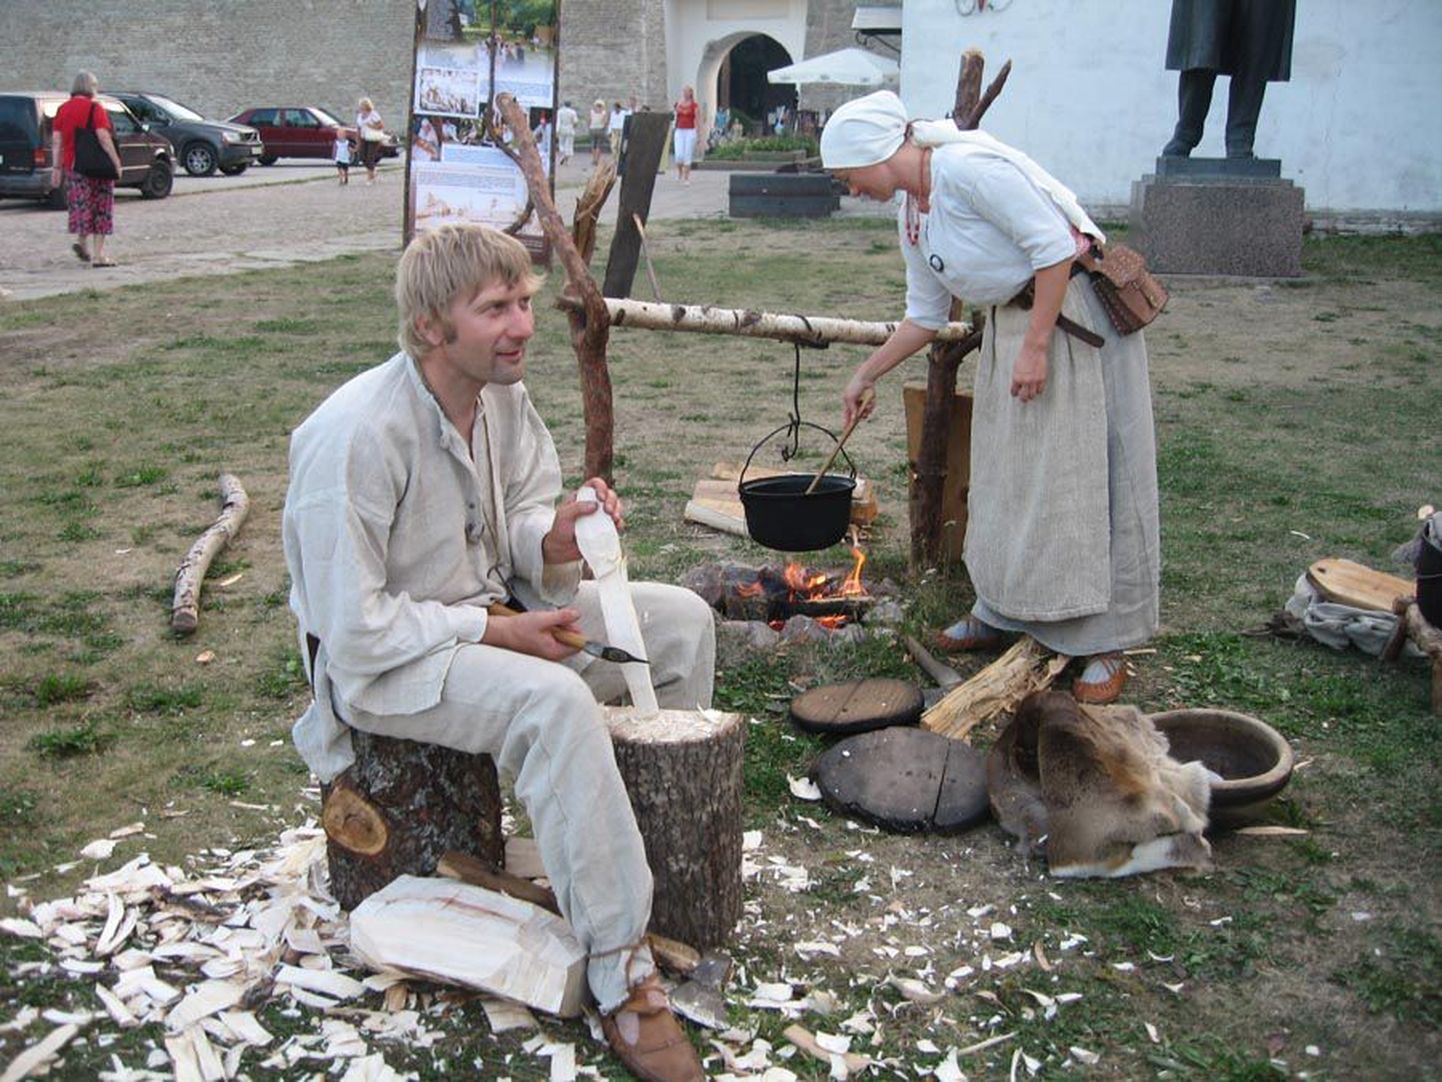 Päev jõuab õhtusse, kuid käsitöölised Narva muuseumi hoovil jätkavad oma toiminguid: teevad puutööd, kraasivad villa ja keedavad toitu. Samas kõrval valmistuvad mitme riigi ajalooklubide esindajad kordama lahingut, mille venelased ja rootslased pidasid 1704. aasta augustis.